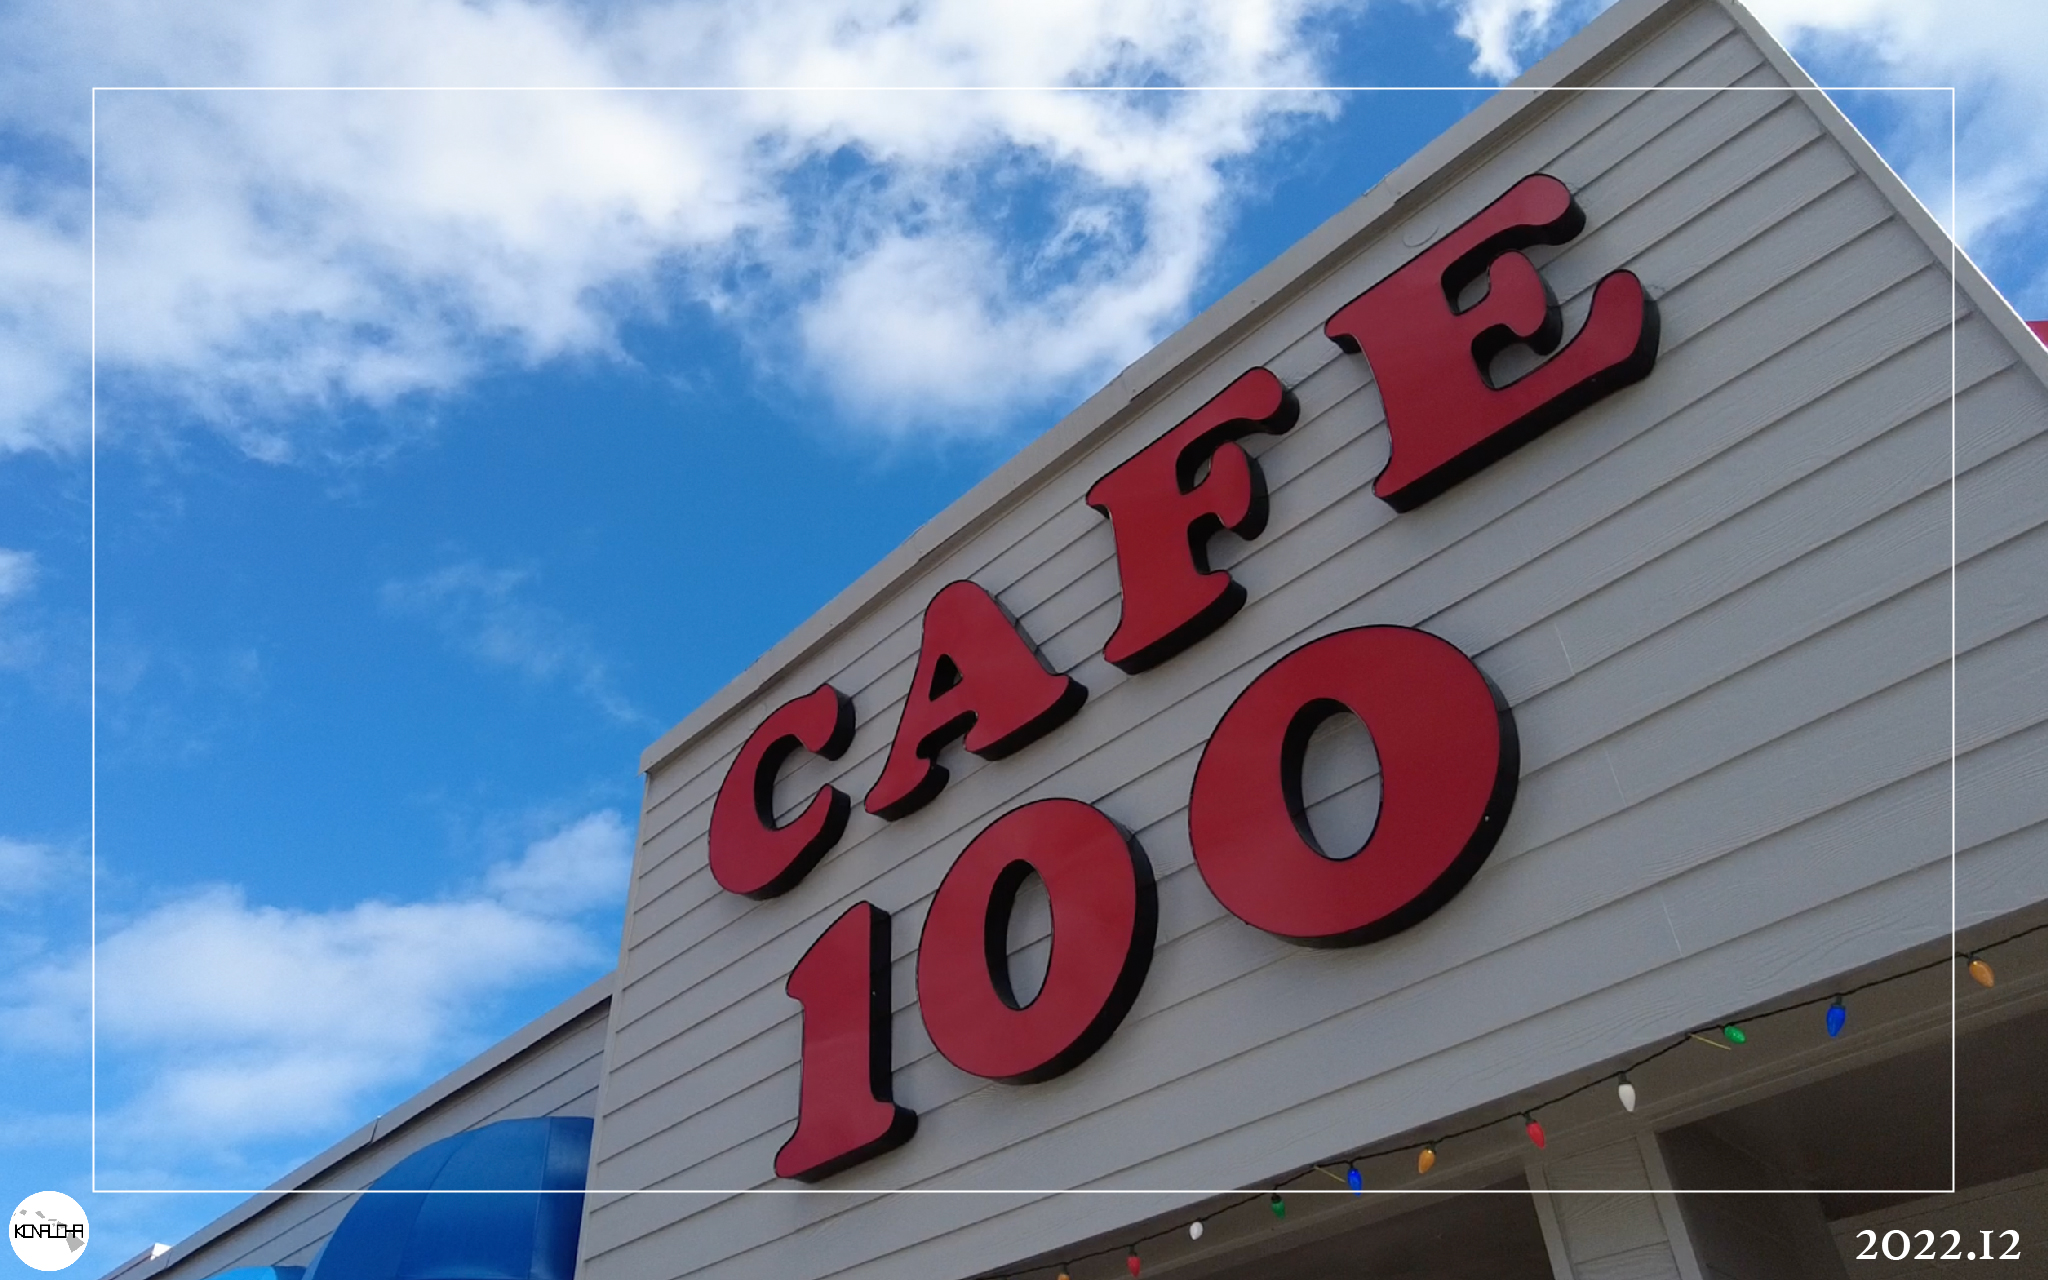 ハワイ島ヒロの"Cafe100"